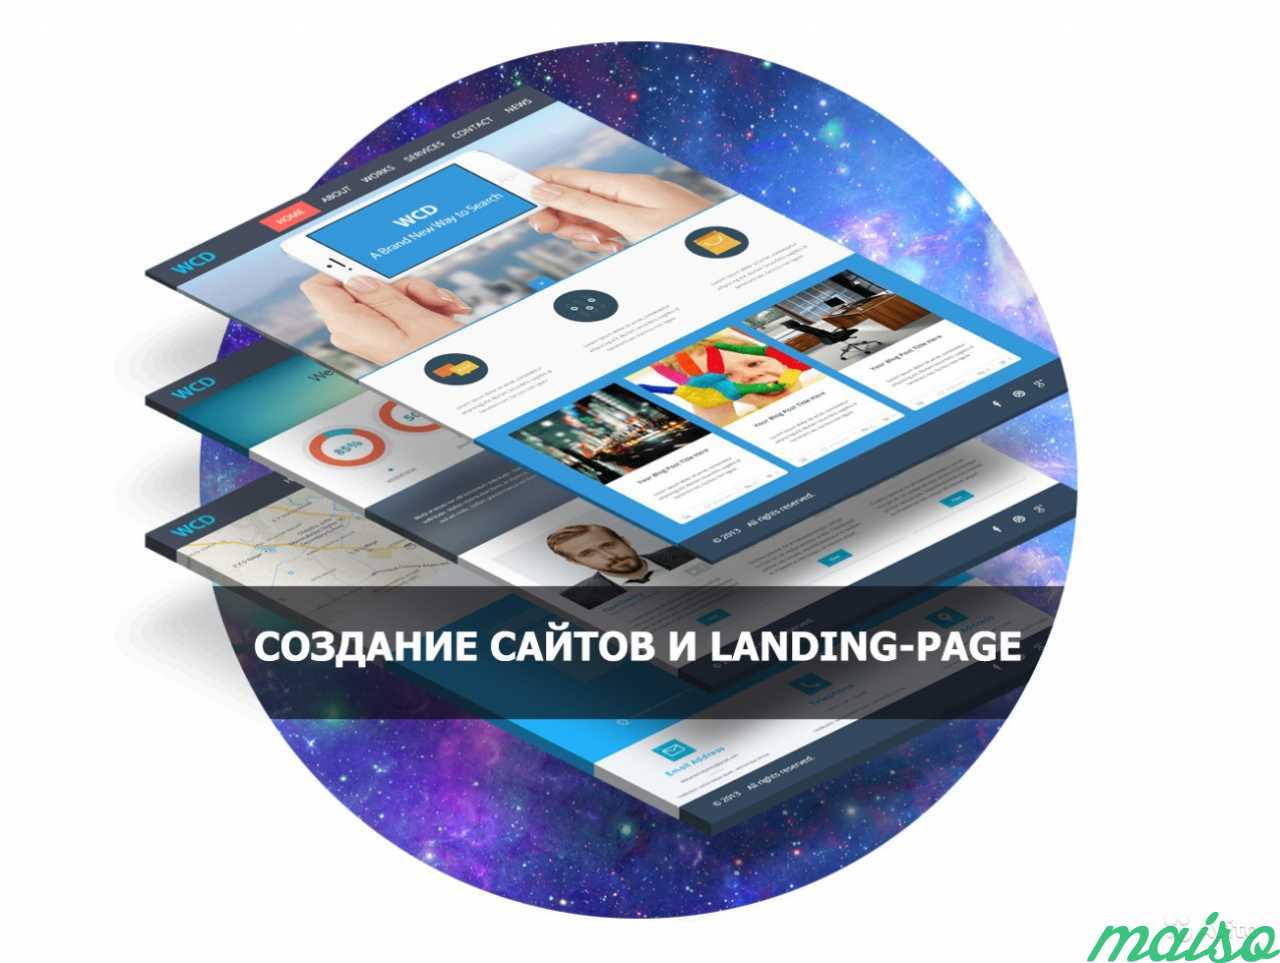 Создание сайтов и landing-page. Частный веб-мастер в Санкт-Петербурге. Фото 1